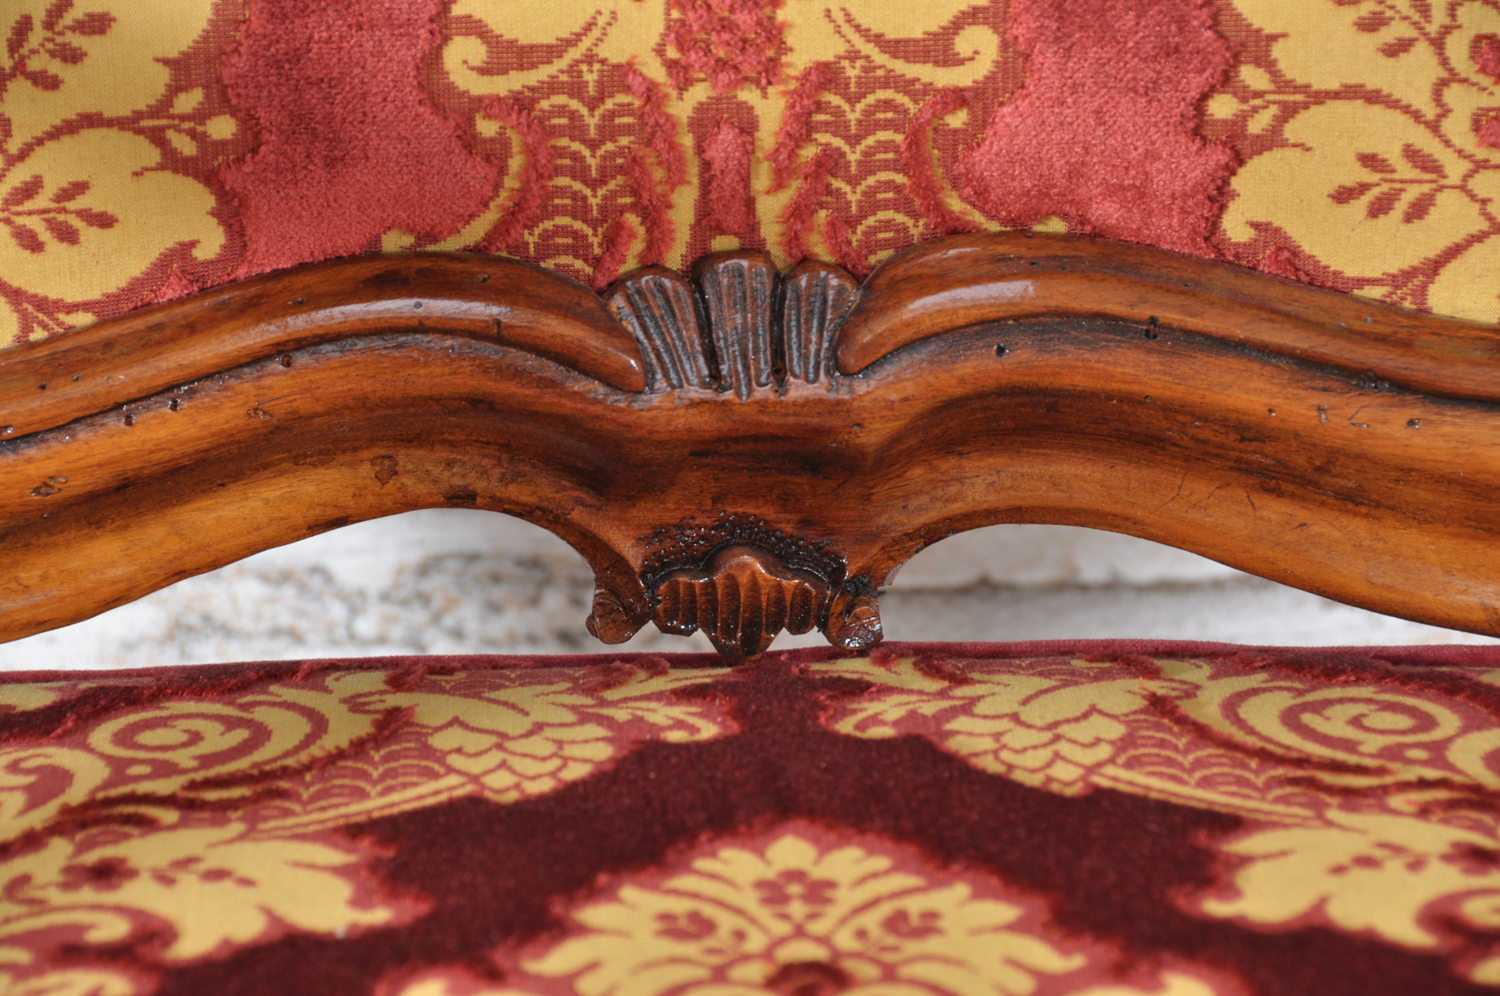 poltrona artigianale in stile 700 barocco veneziano con braccioli e intagliata a mano